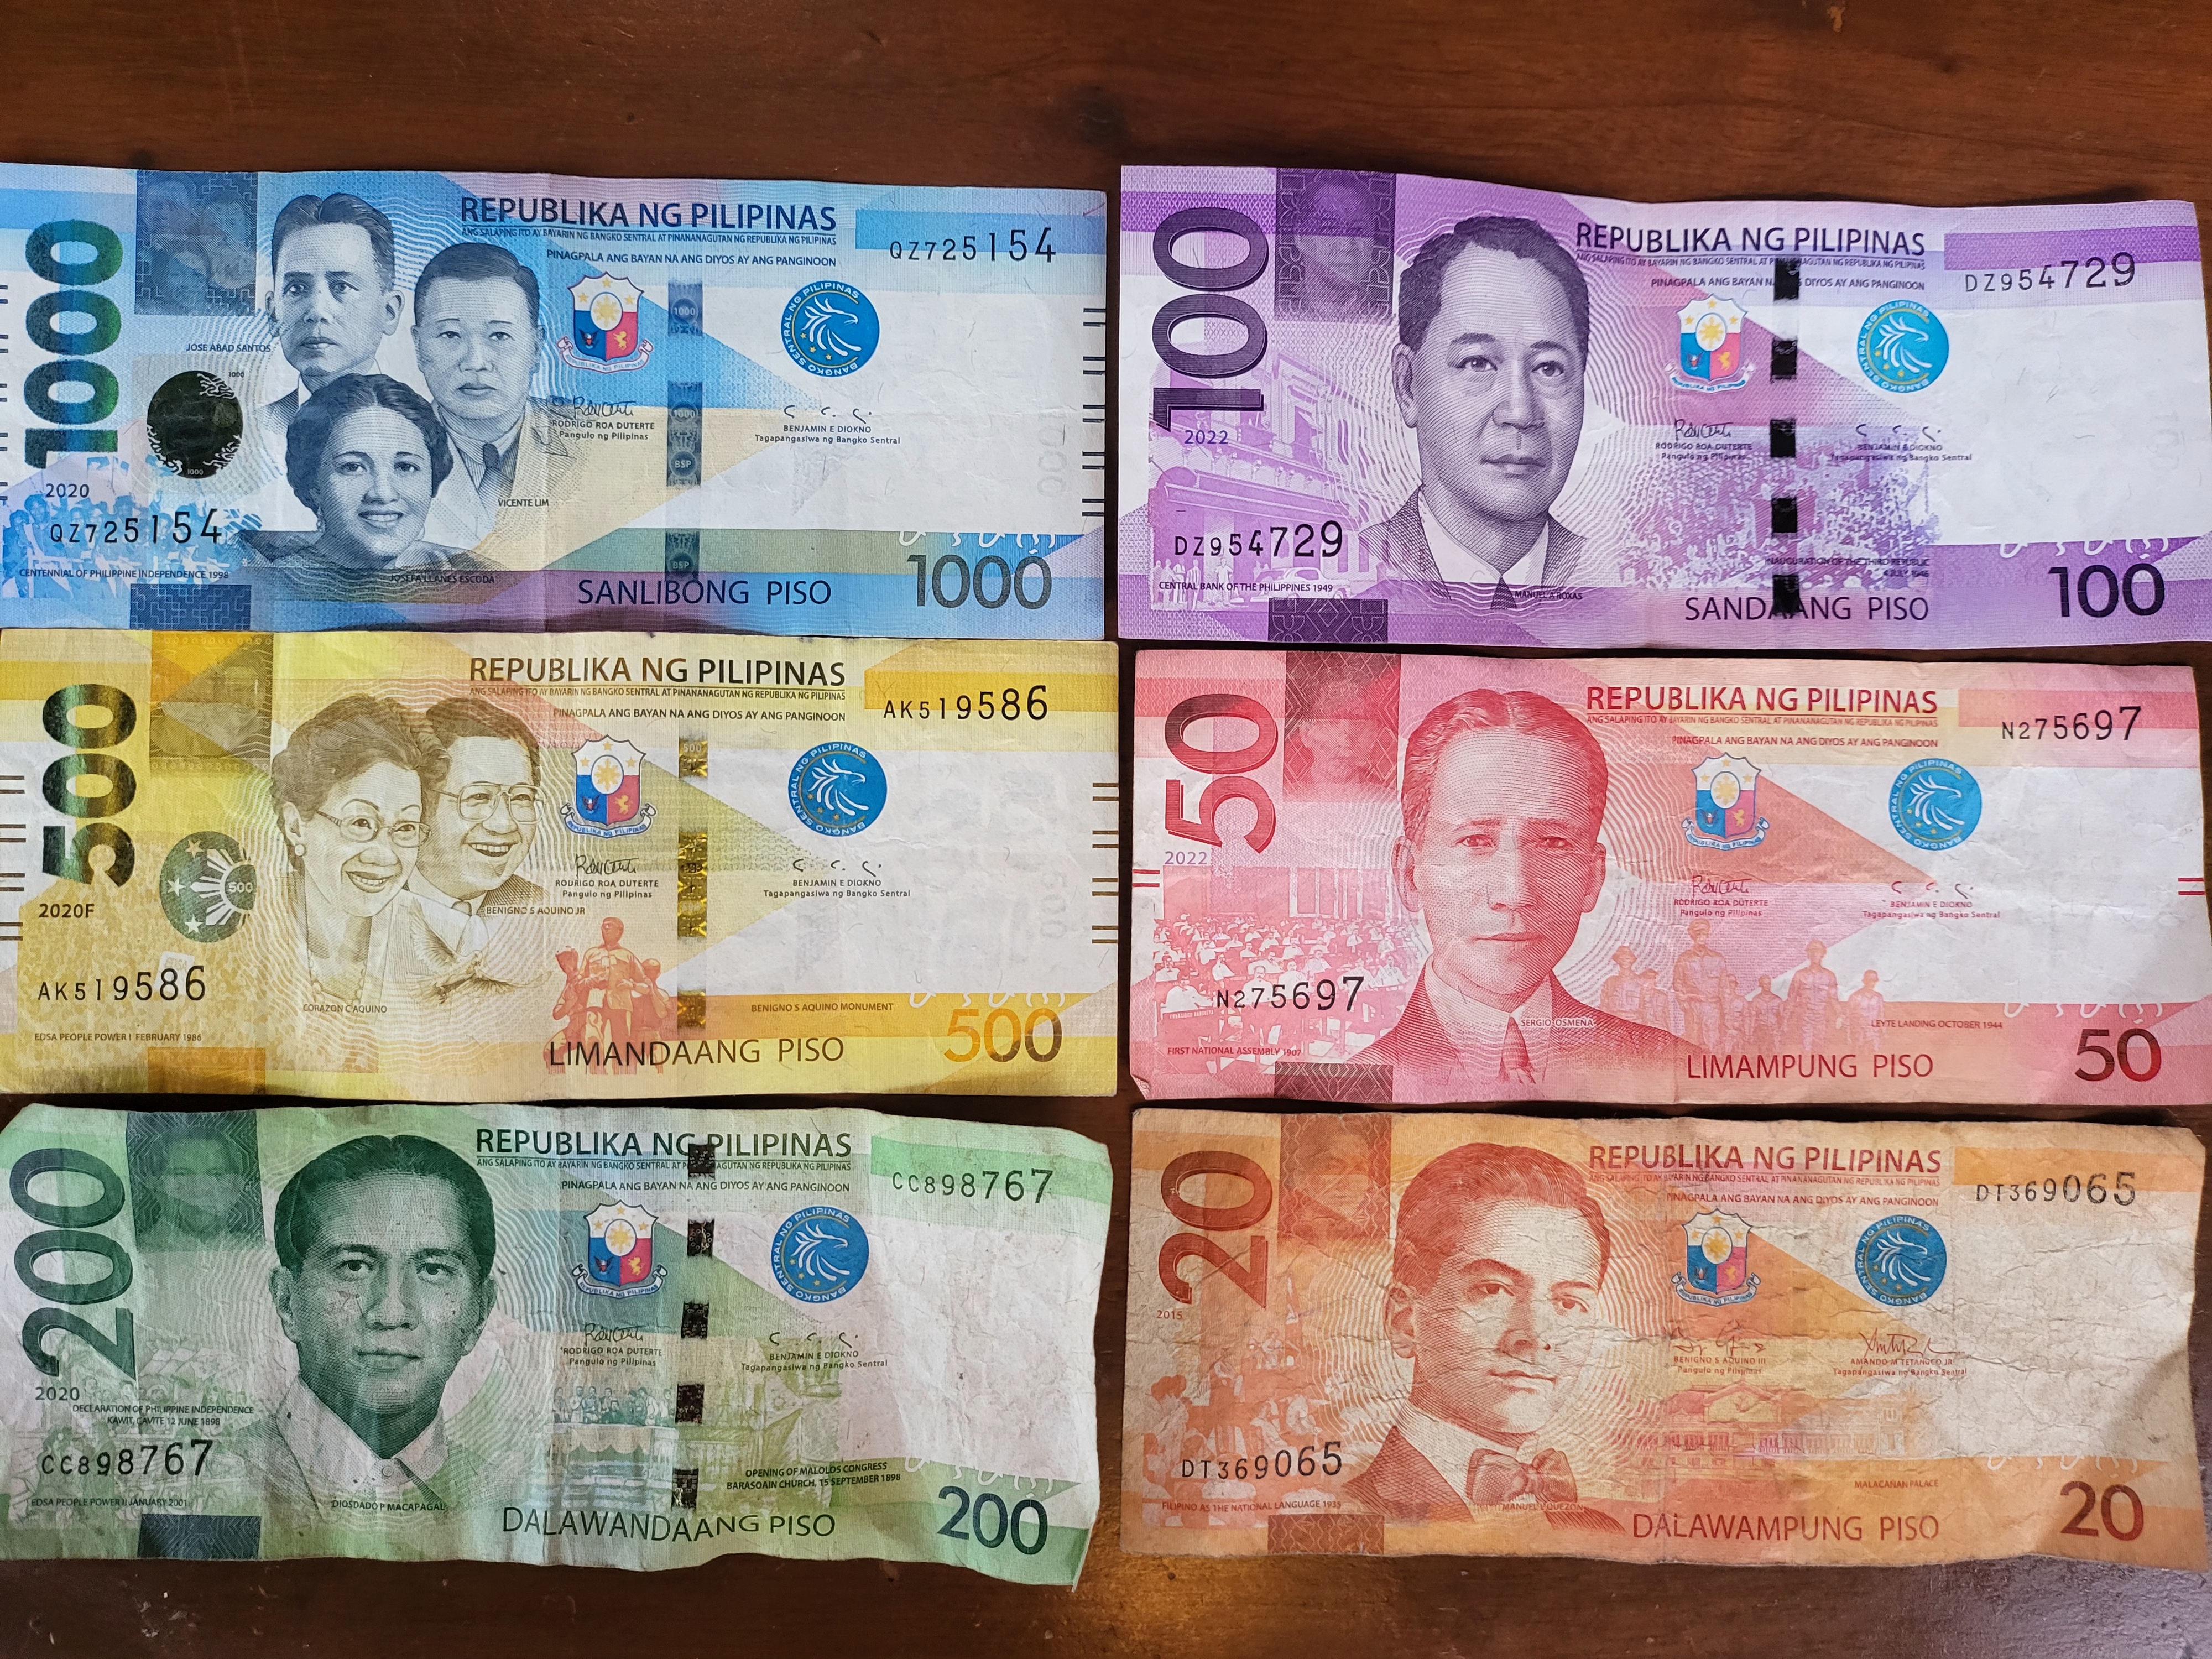 필리핀 여행 화폐 페소 ATM 환전 교통수단 그랩 설치 방법 이용방법 세부 돈